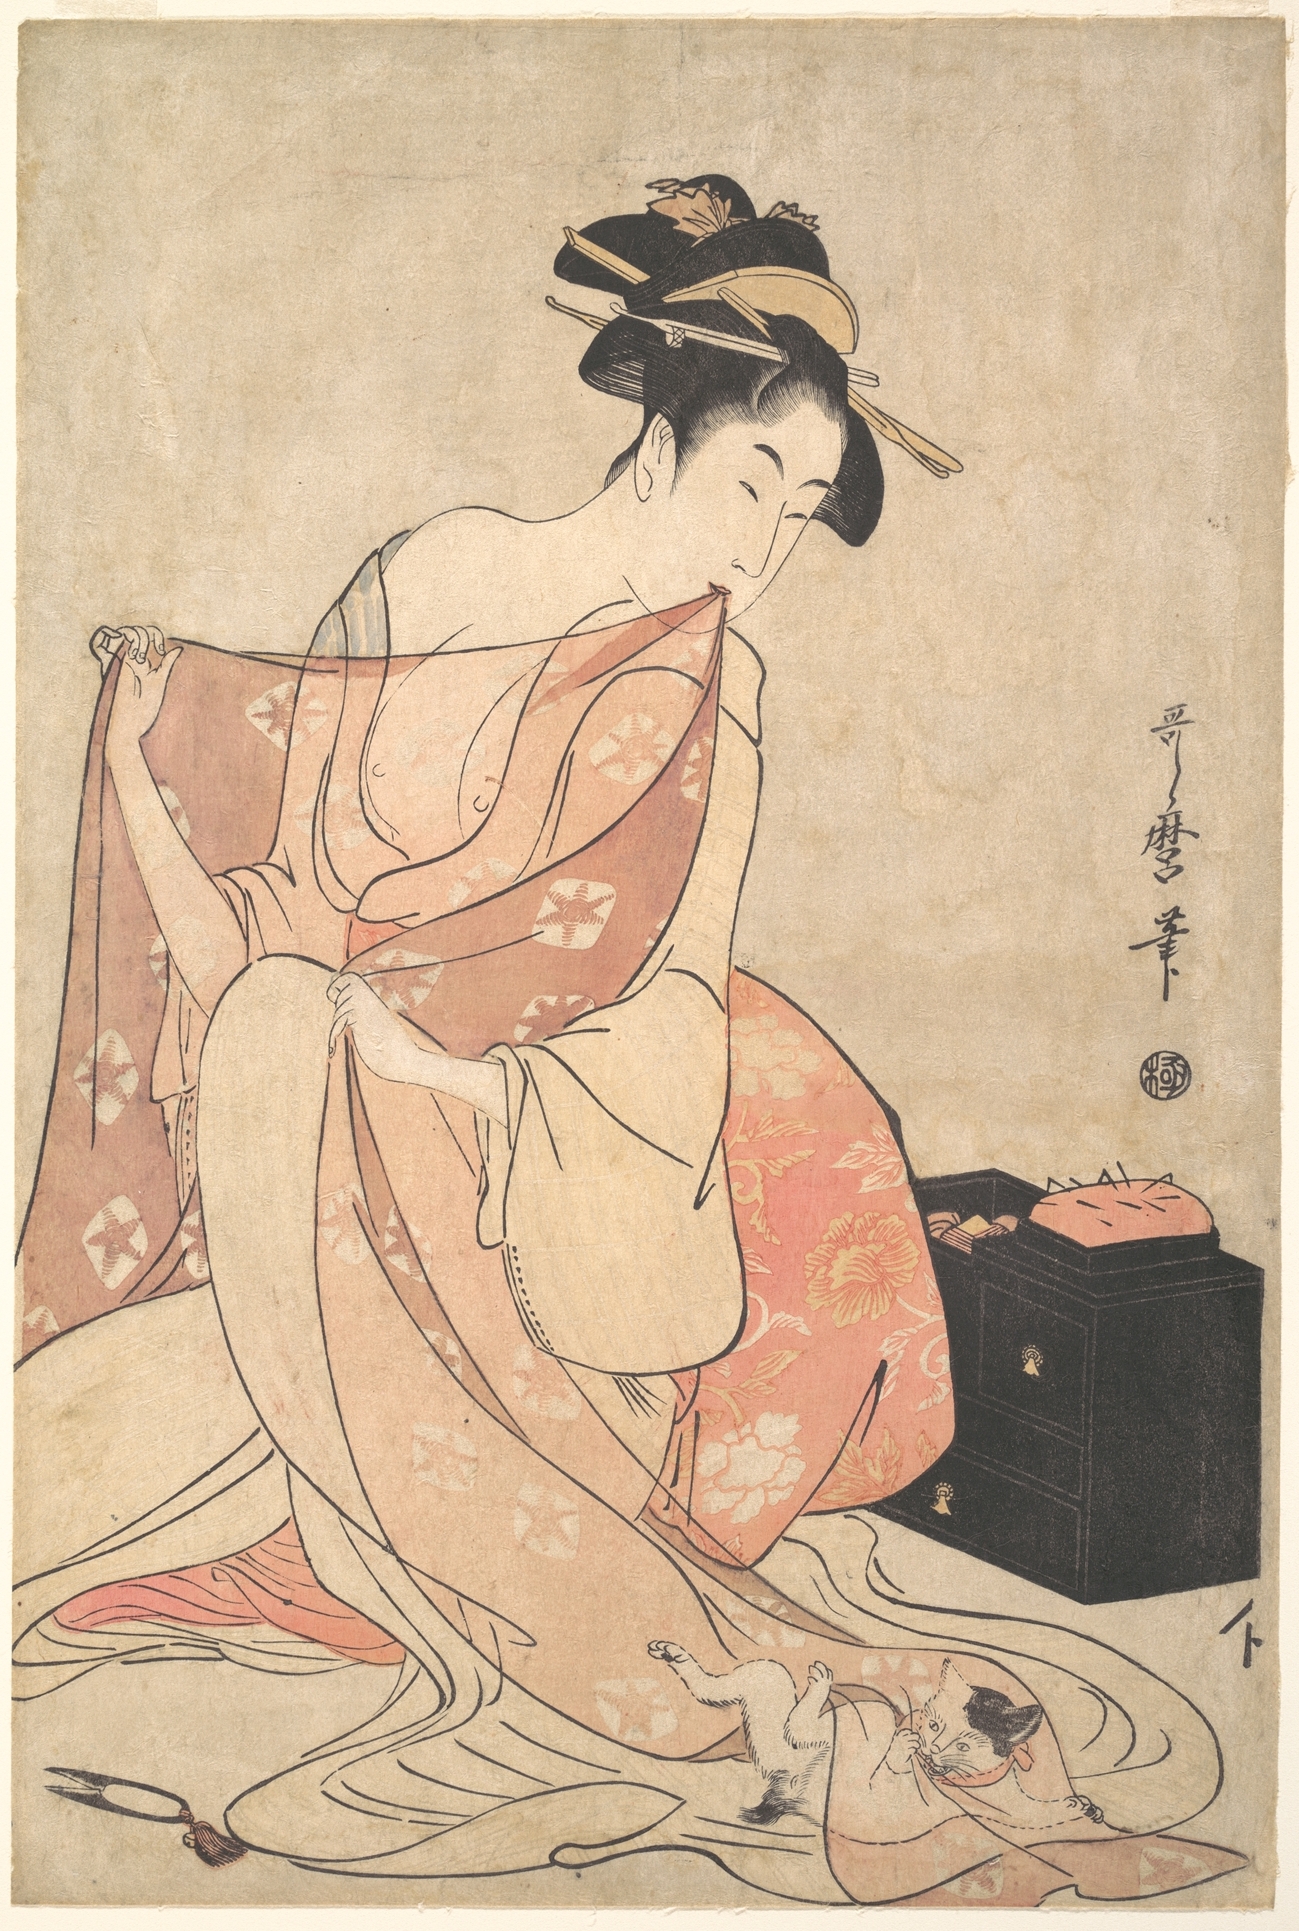 بانو به همراه یک گربه by Kitagawa Utamaro - حدود ۹۴-۱۷۹۳ - 38.4 x 25.9 cm 